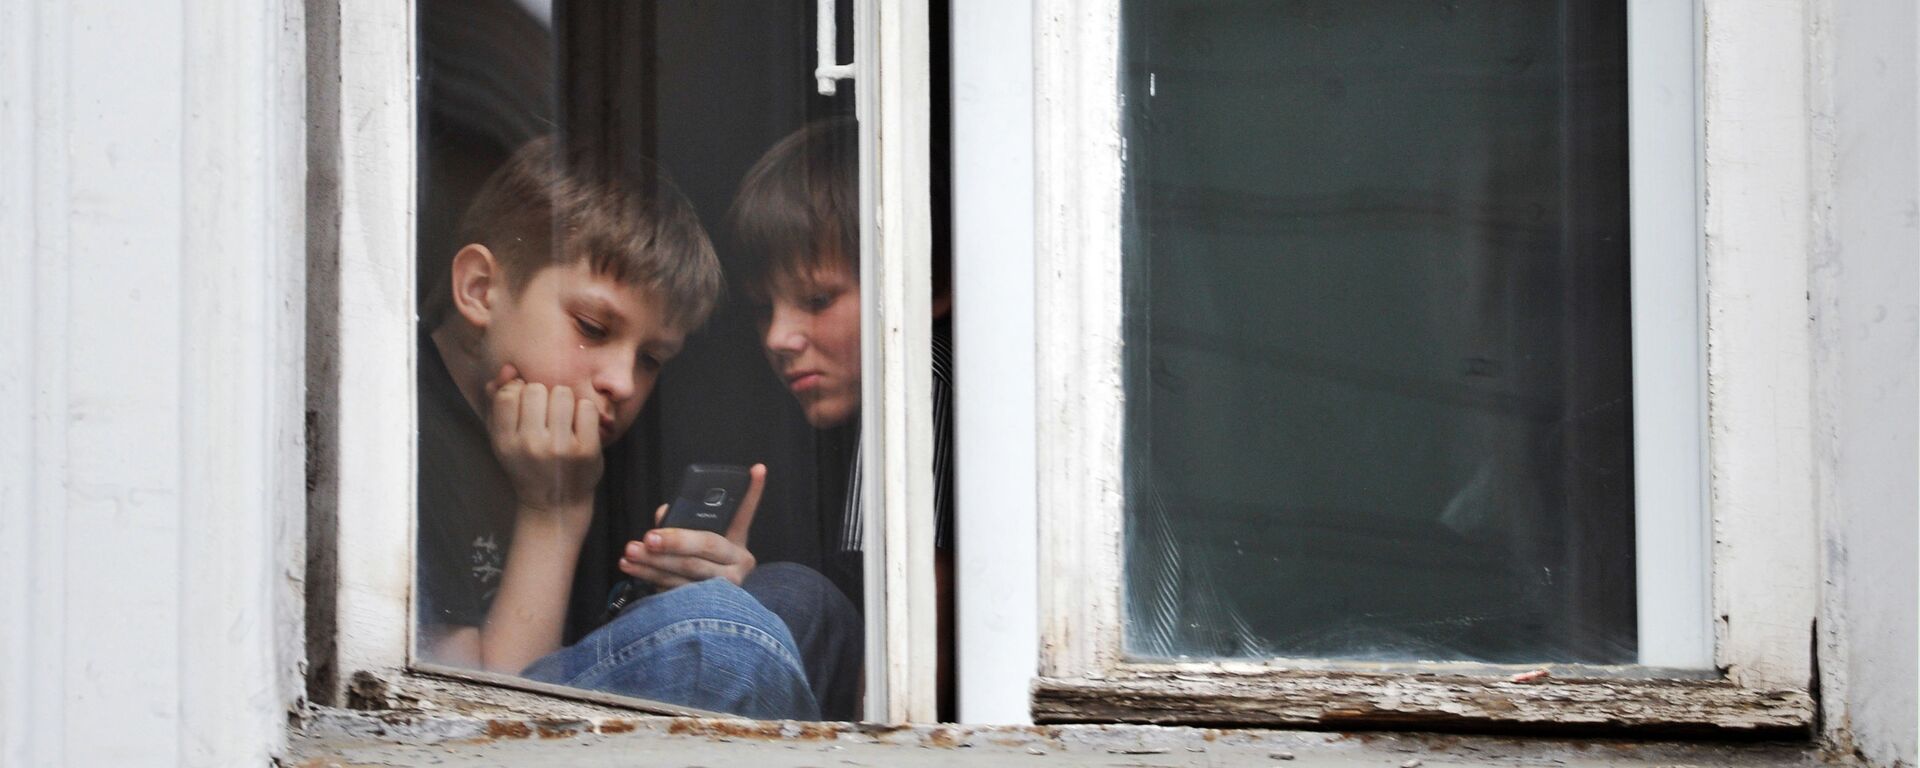 Дети в самоизоляции играют в игры на мобильном телефоне - Sputnik Грузия, 1920, 04.06.2021